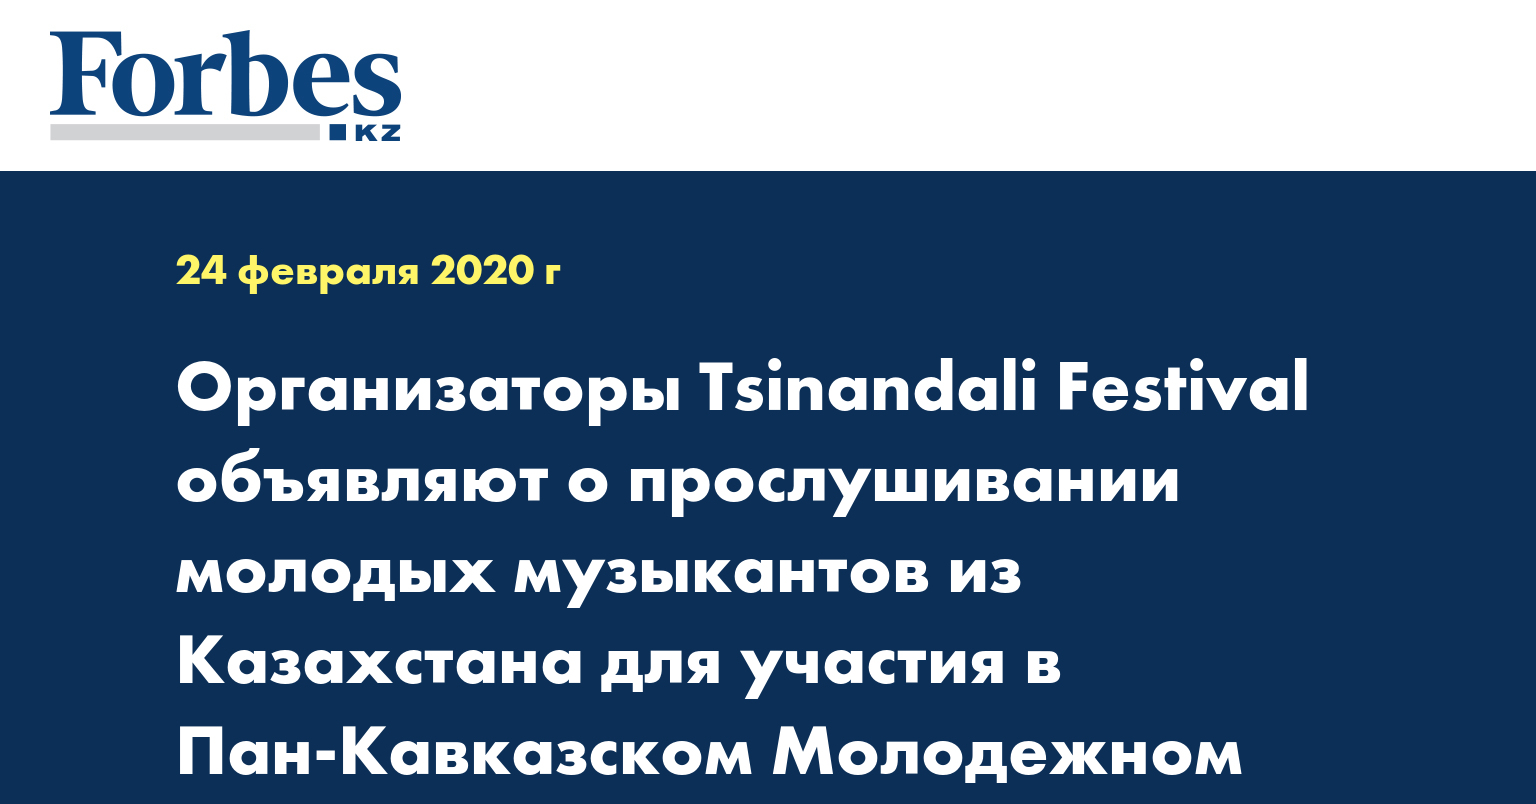 Организаторы Tsinandali Festival объявляют о прослушивании молодых музыкантов из Казахстана для участия в Пан-Кавказском Молодежном Оркестре